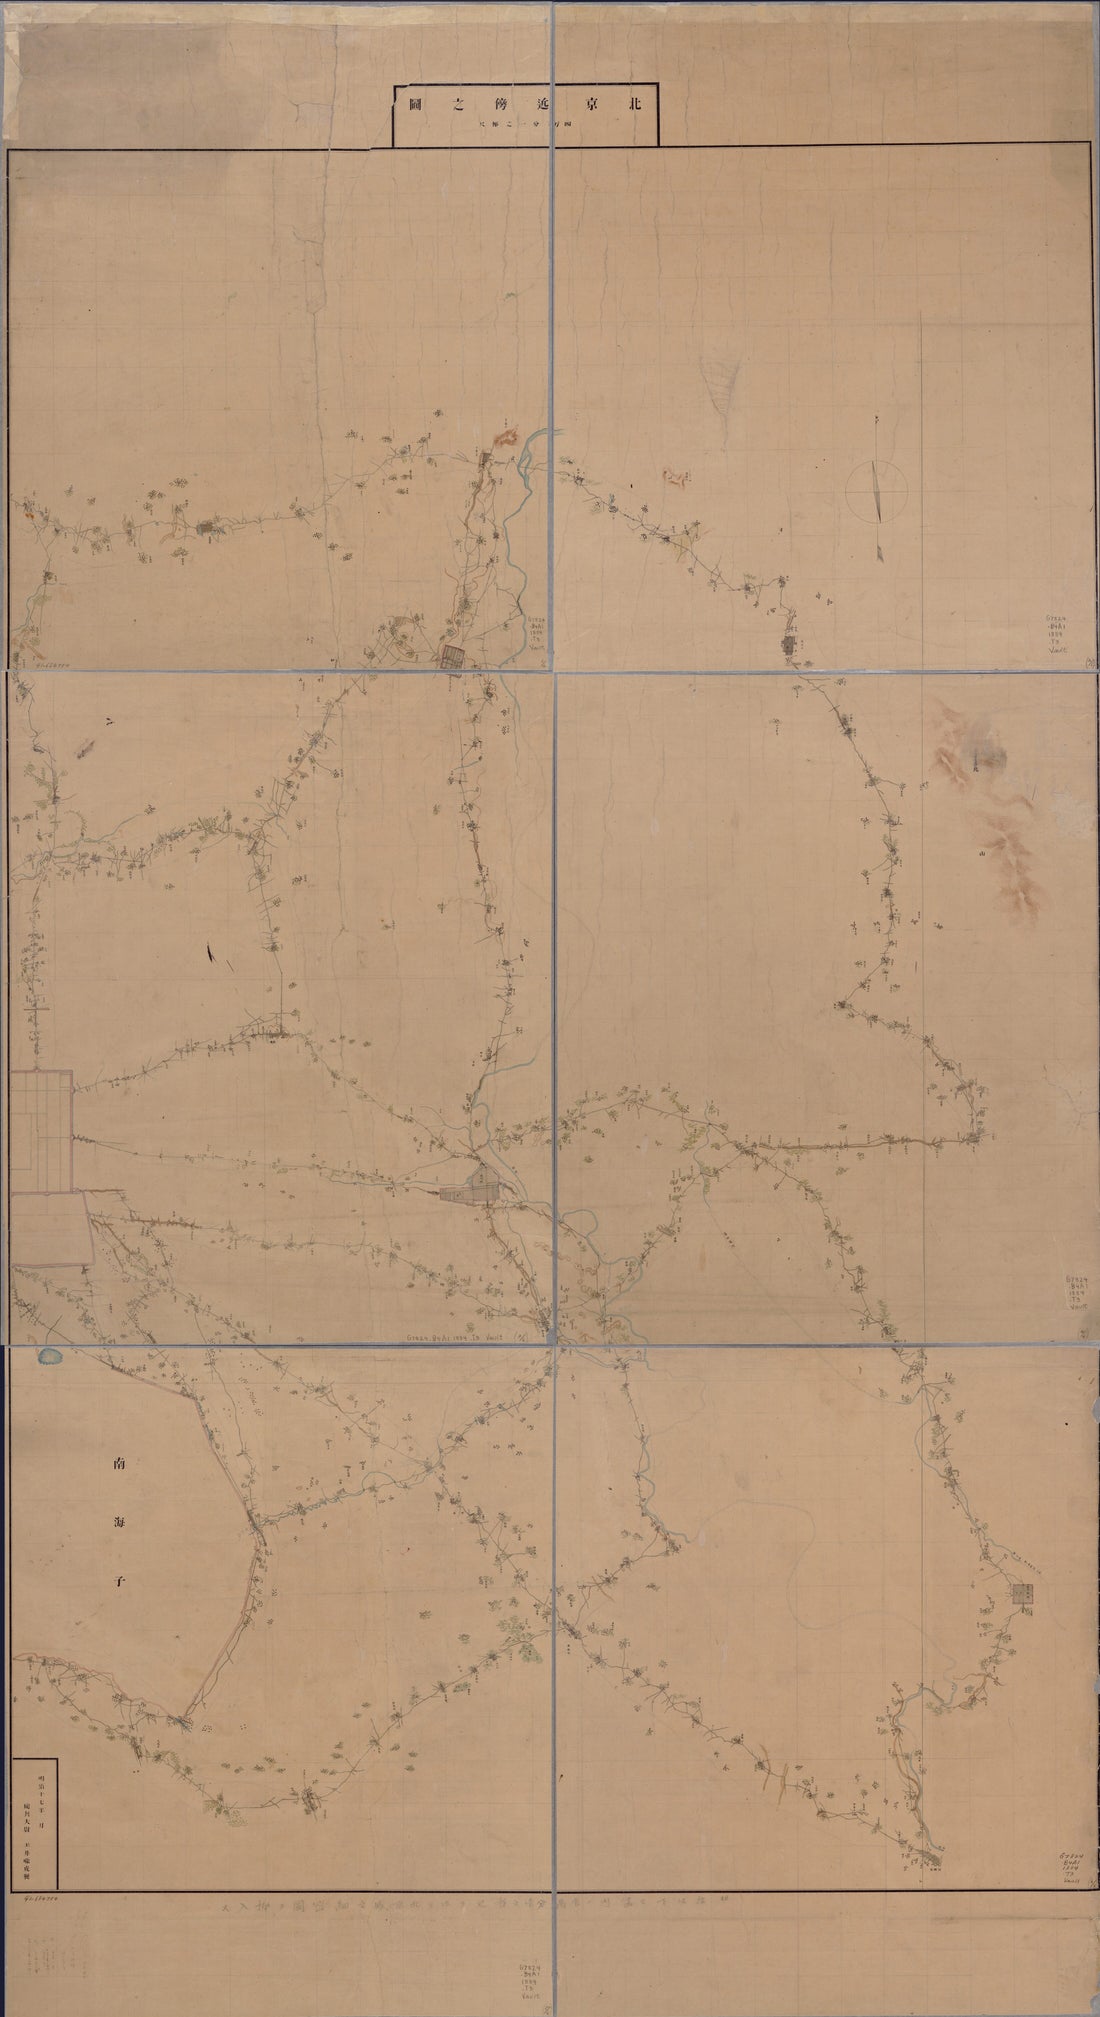 This old map of Pekin Kinbō No Zu, Yonmanbun No Ichi (Beijing Jin Pang Zhi Tu) from 1884 was created by Rōko Tamai in 1884